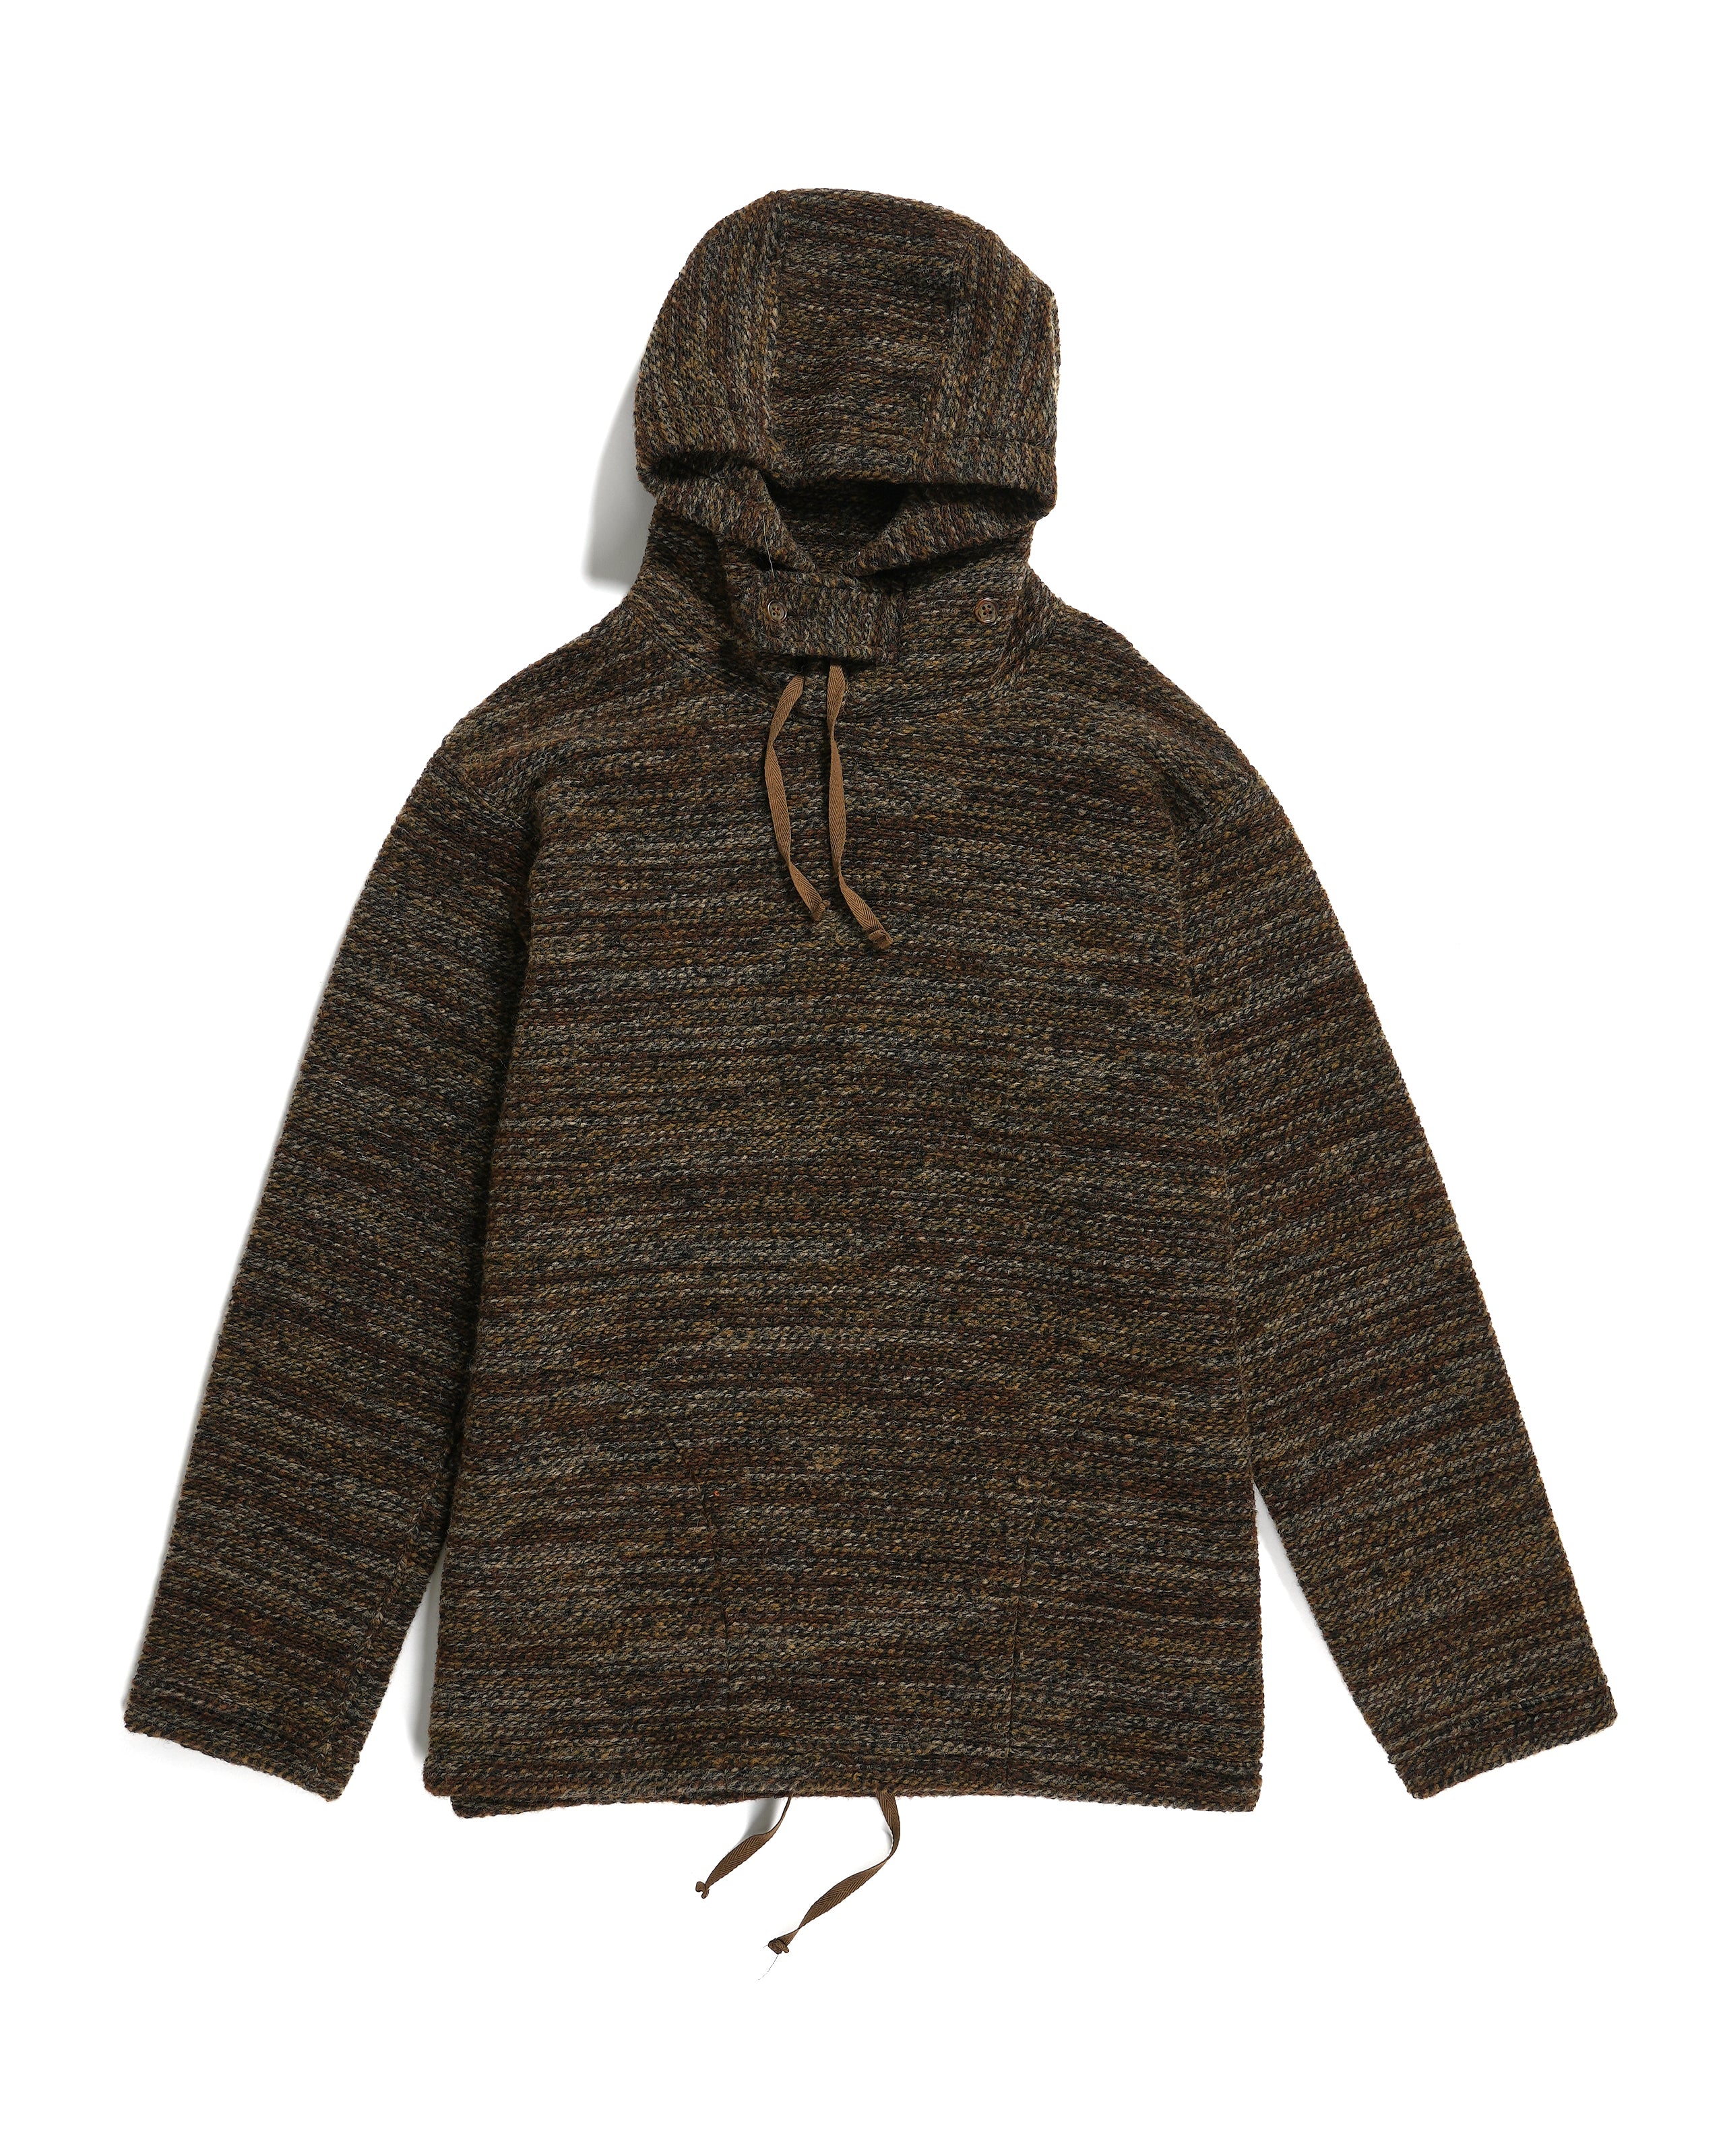 Long Sleeve Hoody - Brown Poly Wool Melange Knit